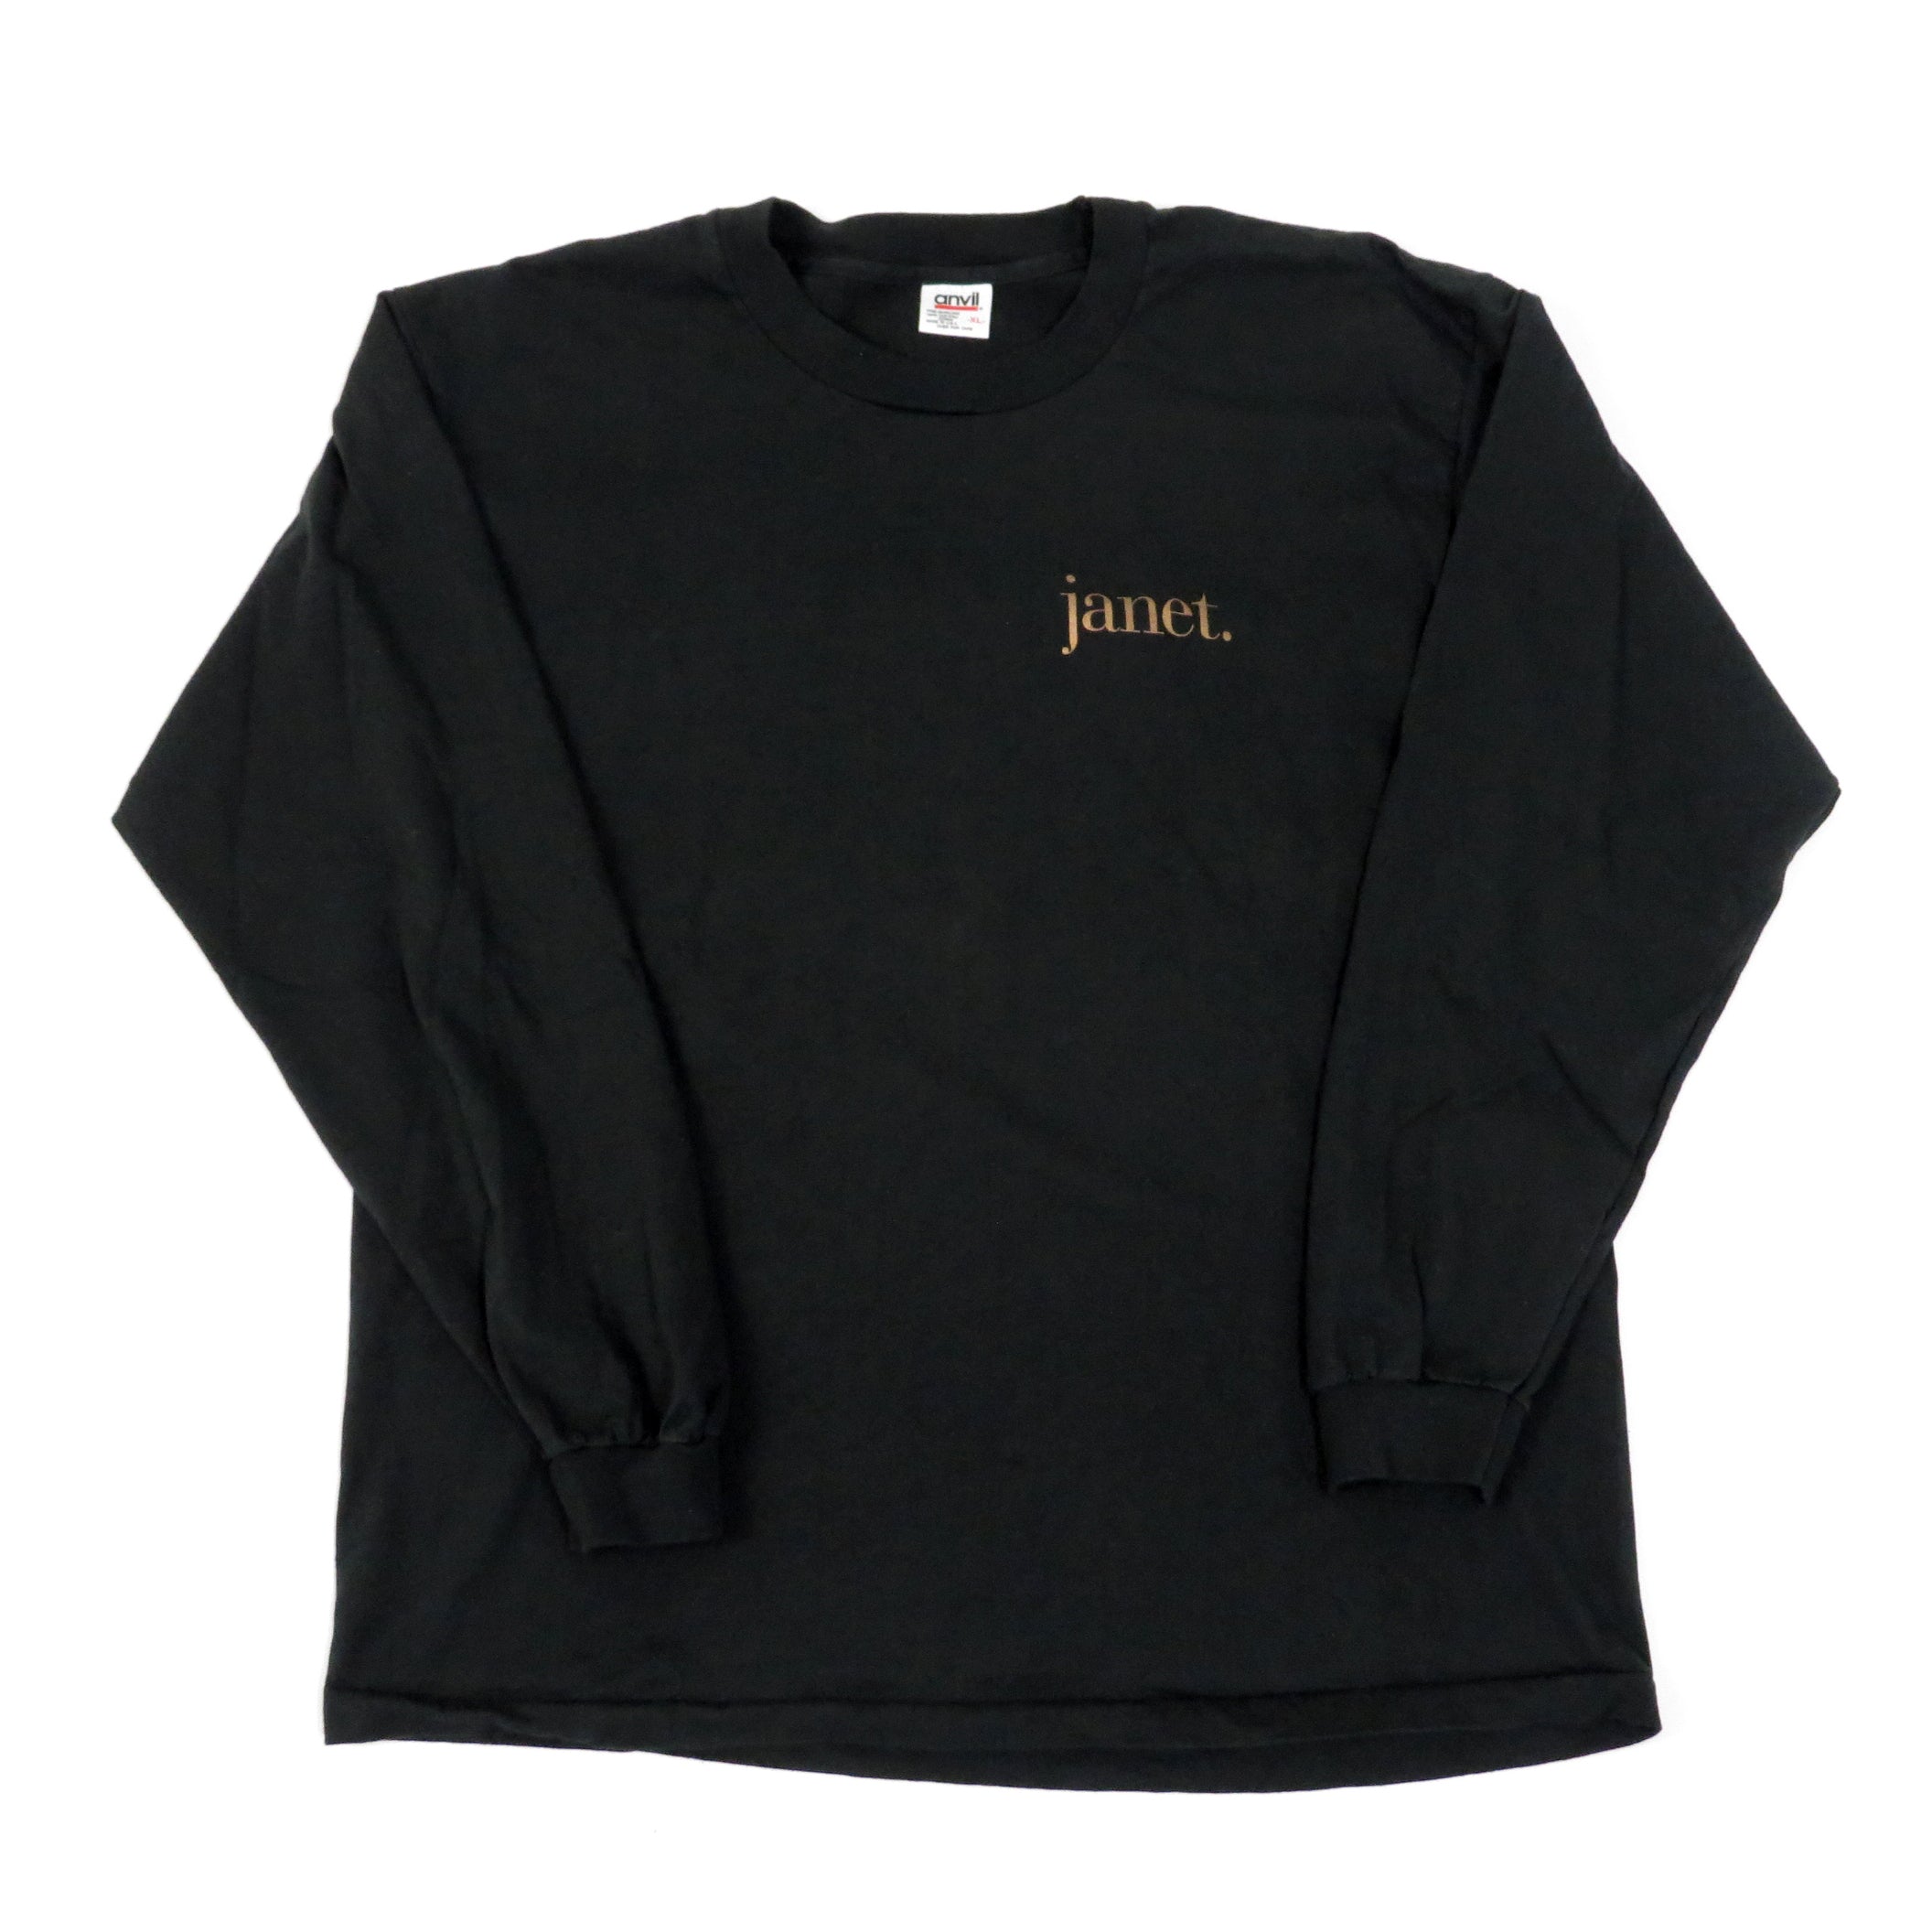 Vintage 1993 Janet Jackson World Tour Long Sleeve T-Shirt Sz XL